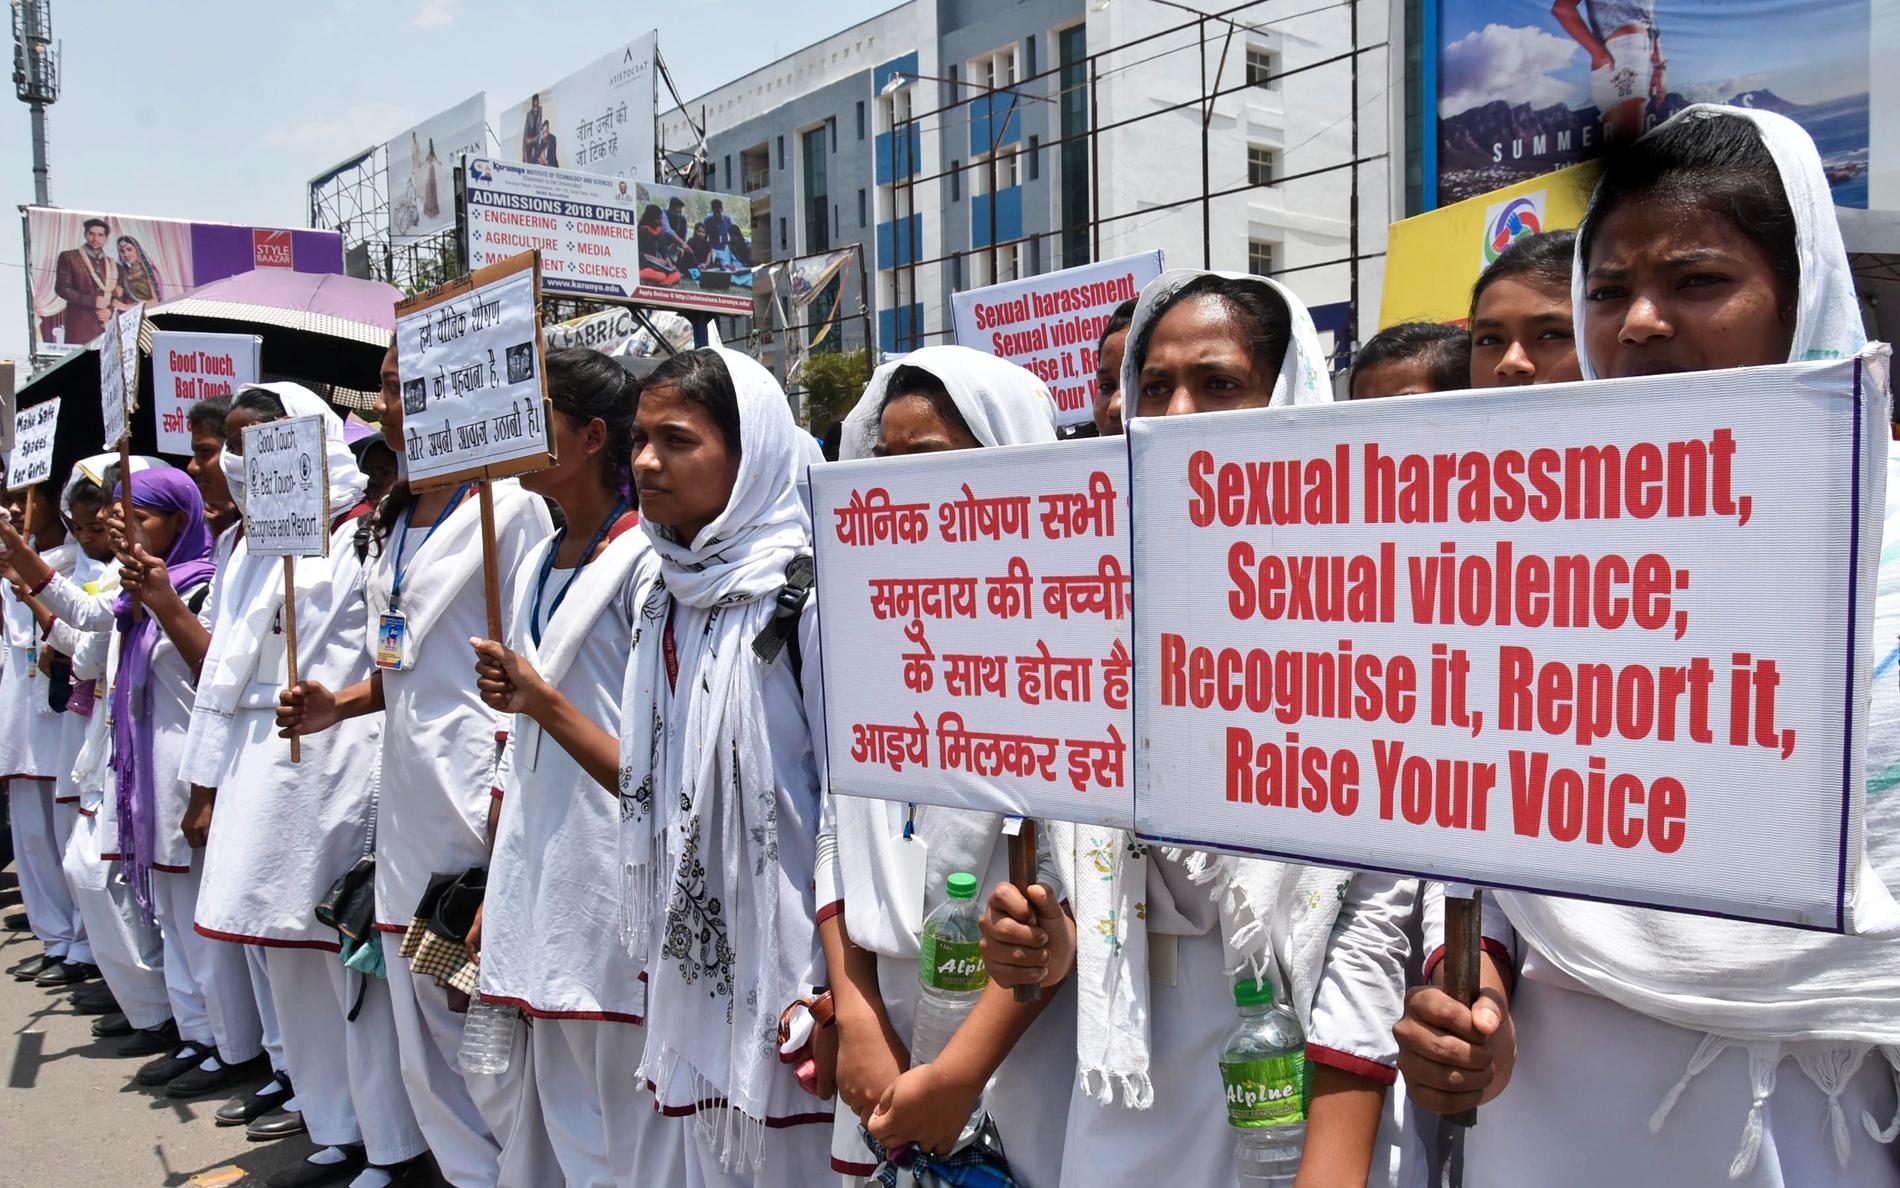 Indien har skakats av en rad brutala våldtäktsfall de senaste åren vilket utlöst återkommande protester runt om i landet med krav på åtgärder. På bilden syns protester i delstaten Jharkhand i maj i fjol. Arkivbild.